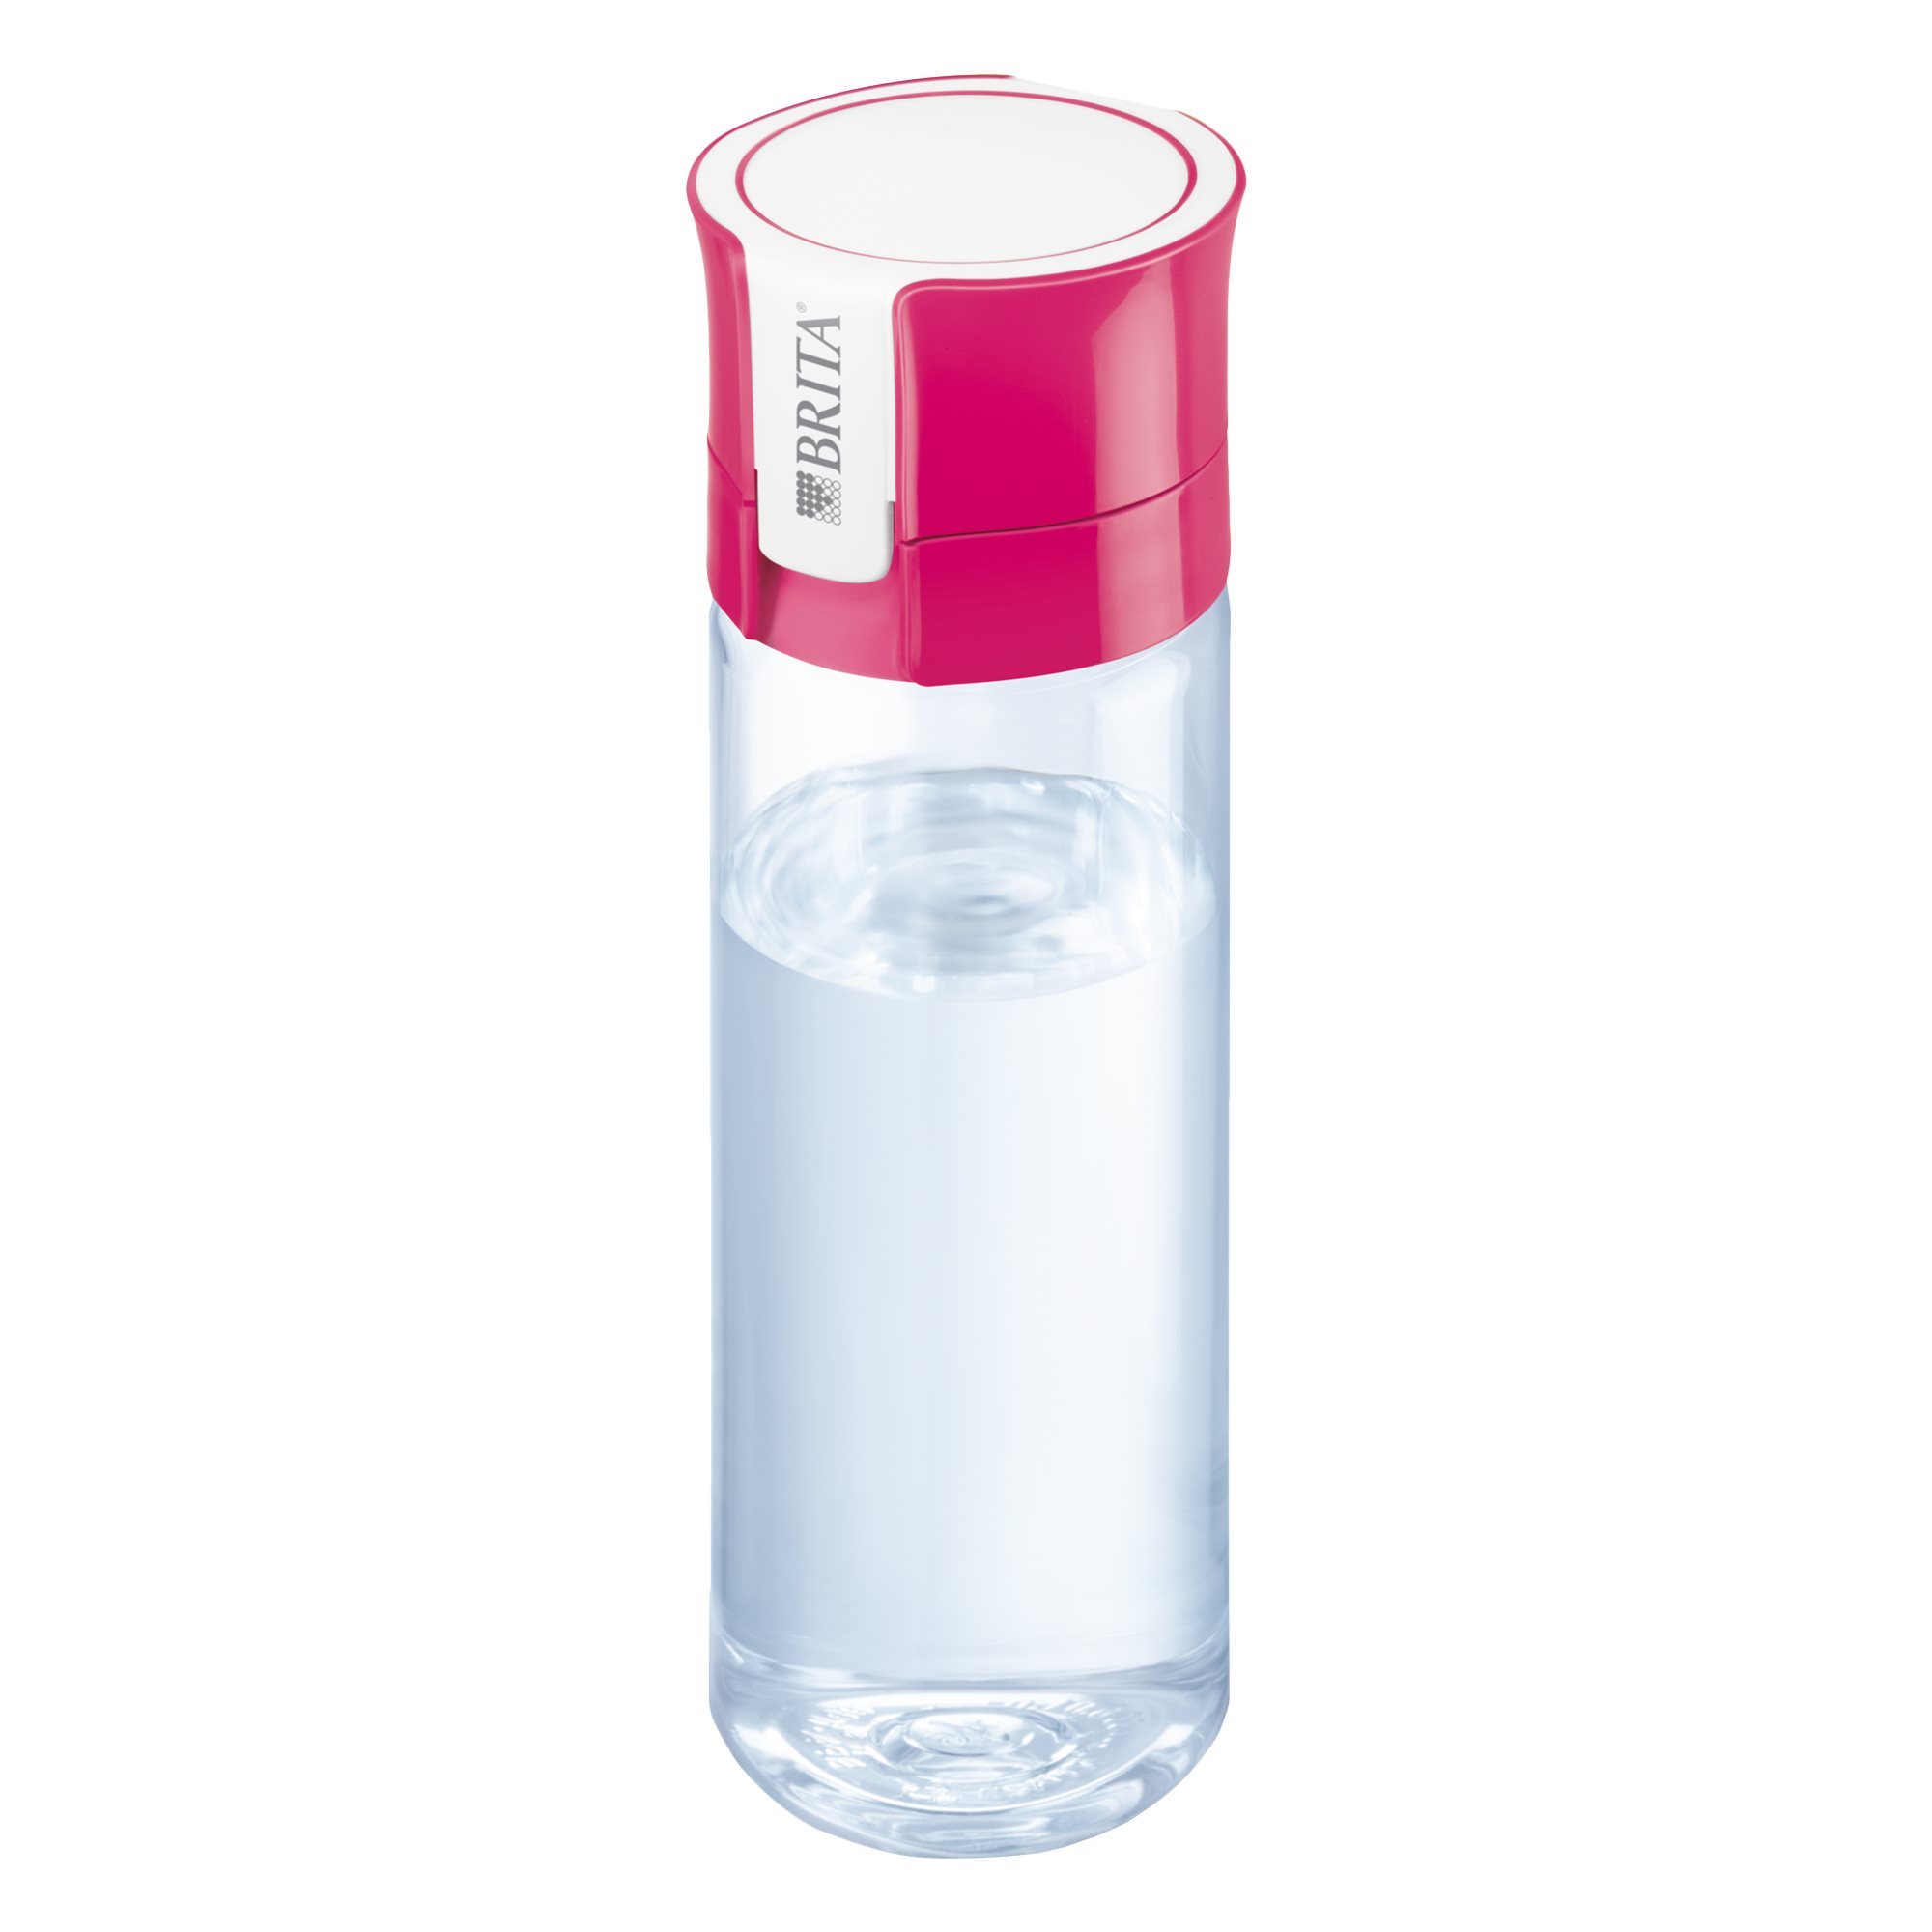 Botella filtrante de agua Active 1 filtro Brita